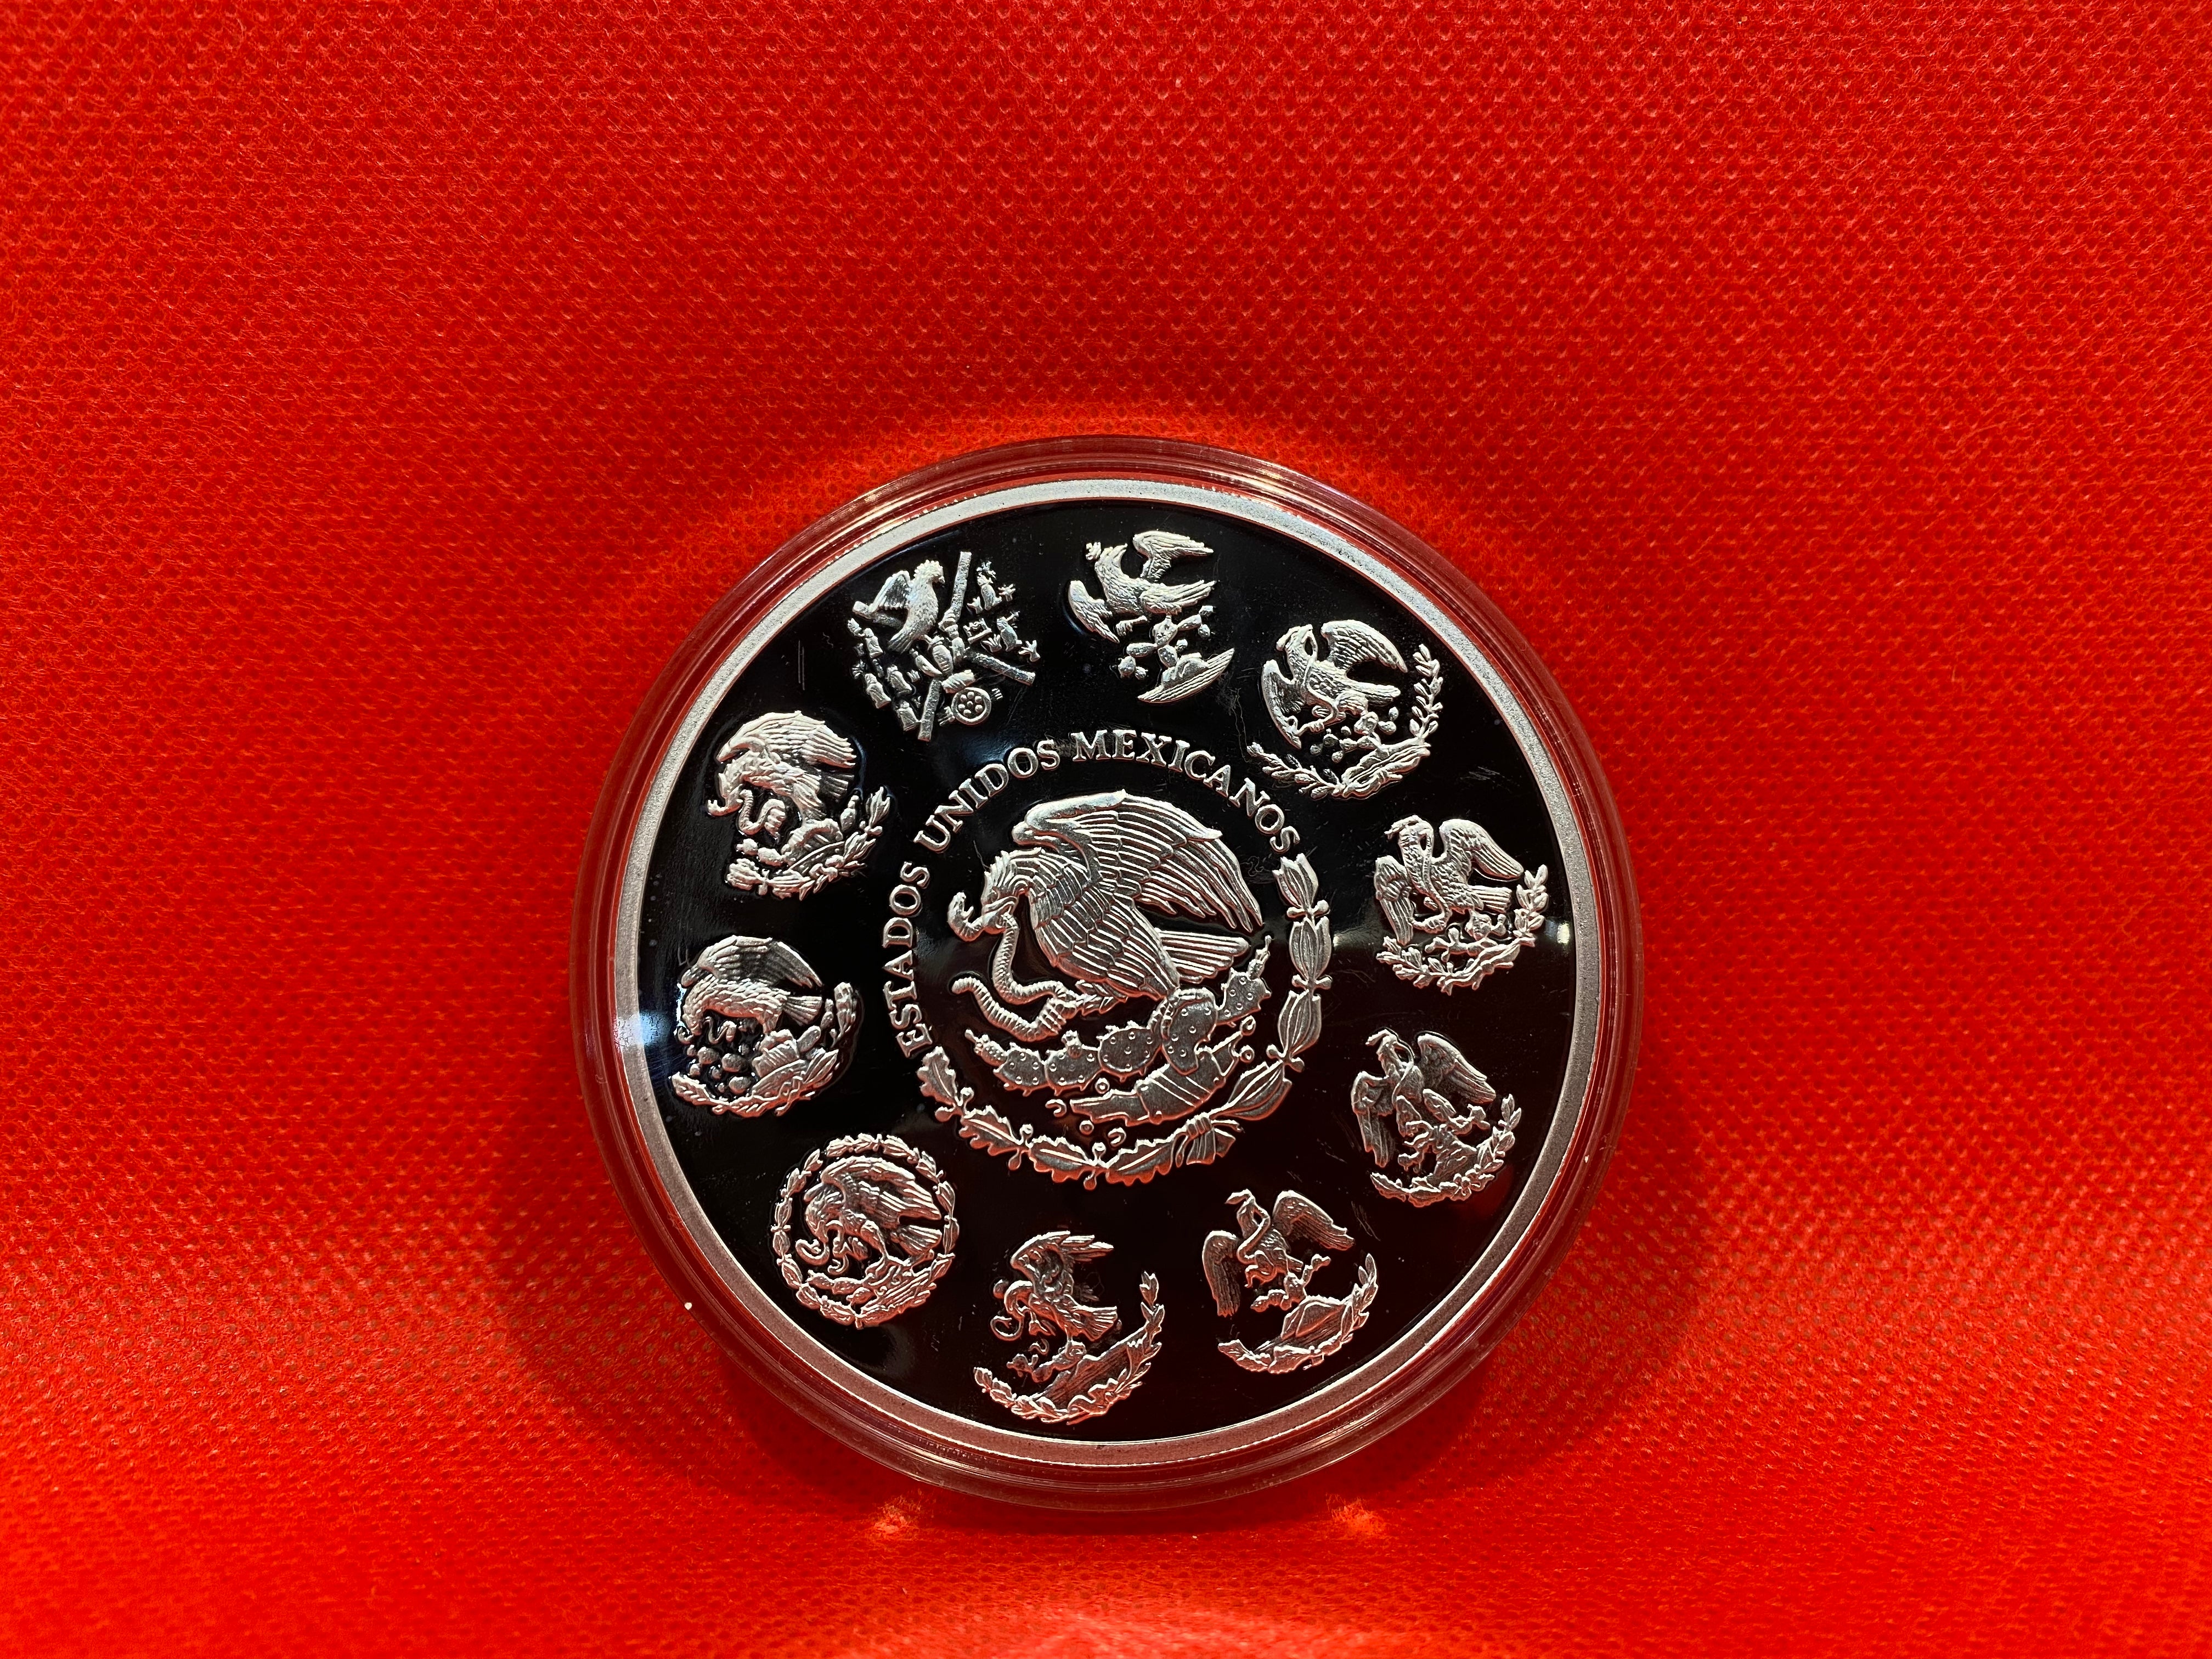 2017 5 oz Silver Libertad coin, Mexico